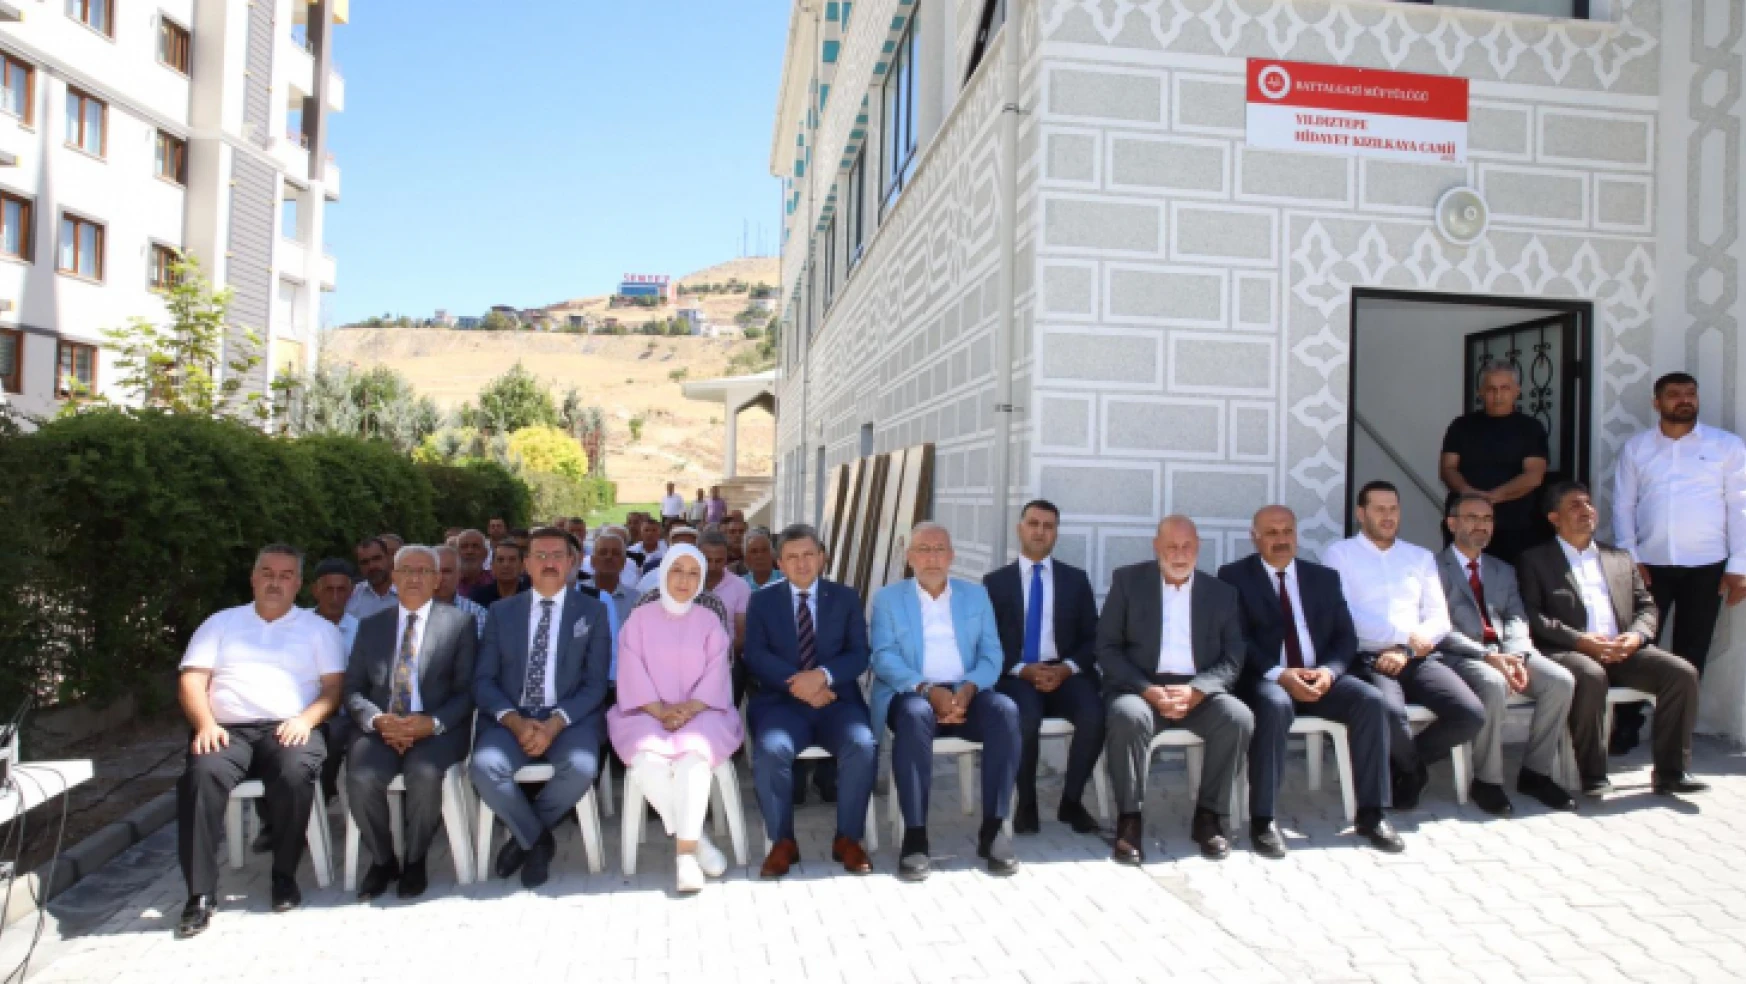 Başkan Güder'in Girişimleriyle Battalgazi'ye Kazandırılan Caminin Açılışı Yapıldı